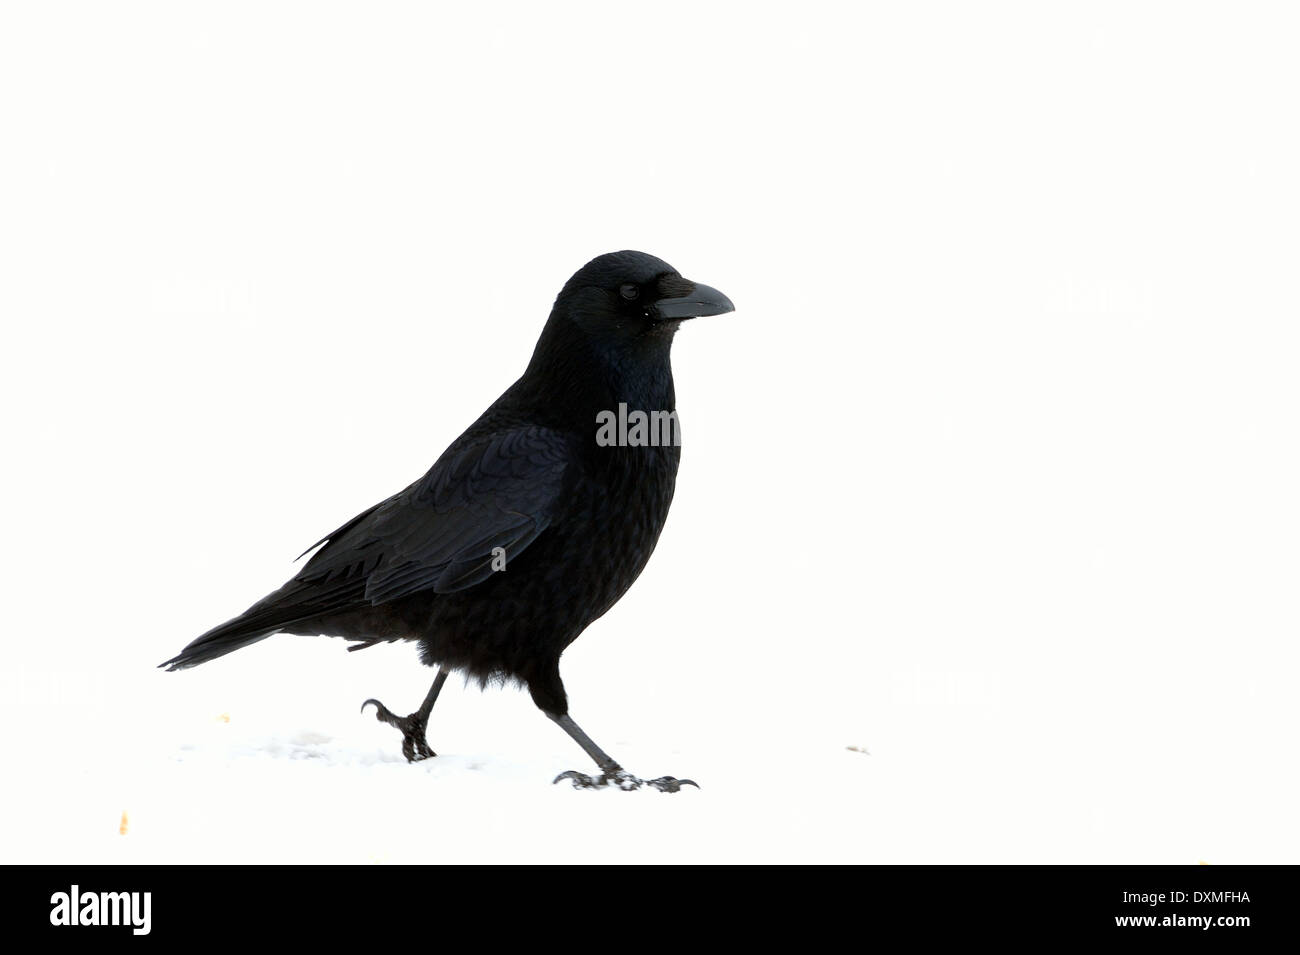 Corneille noire - Corvus corone eurasien (Crow) marche sur la neige en hiver Banque D'Images